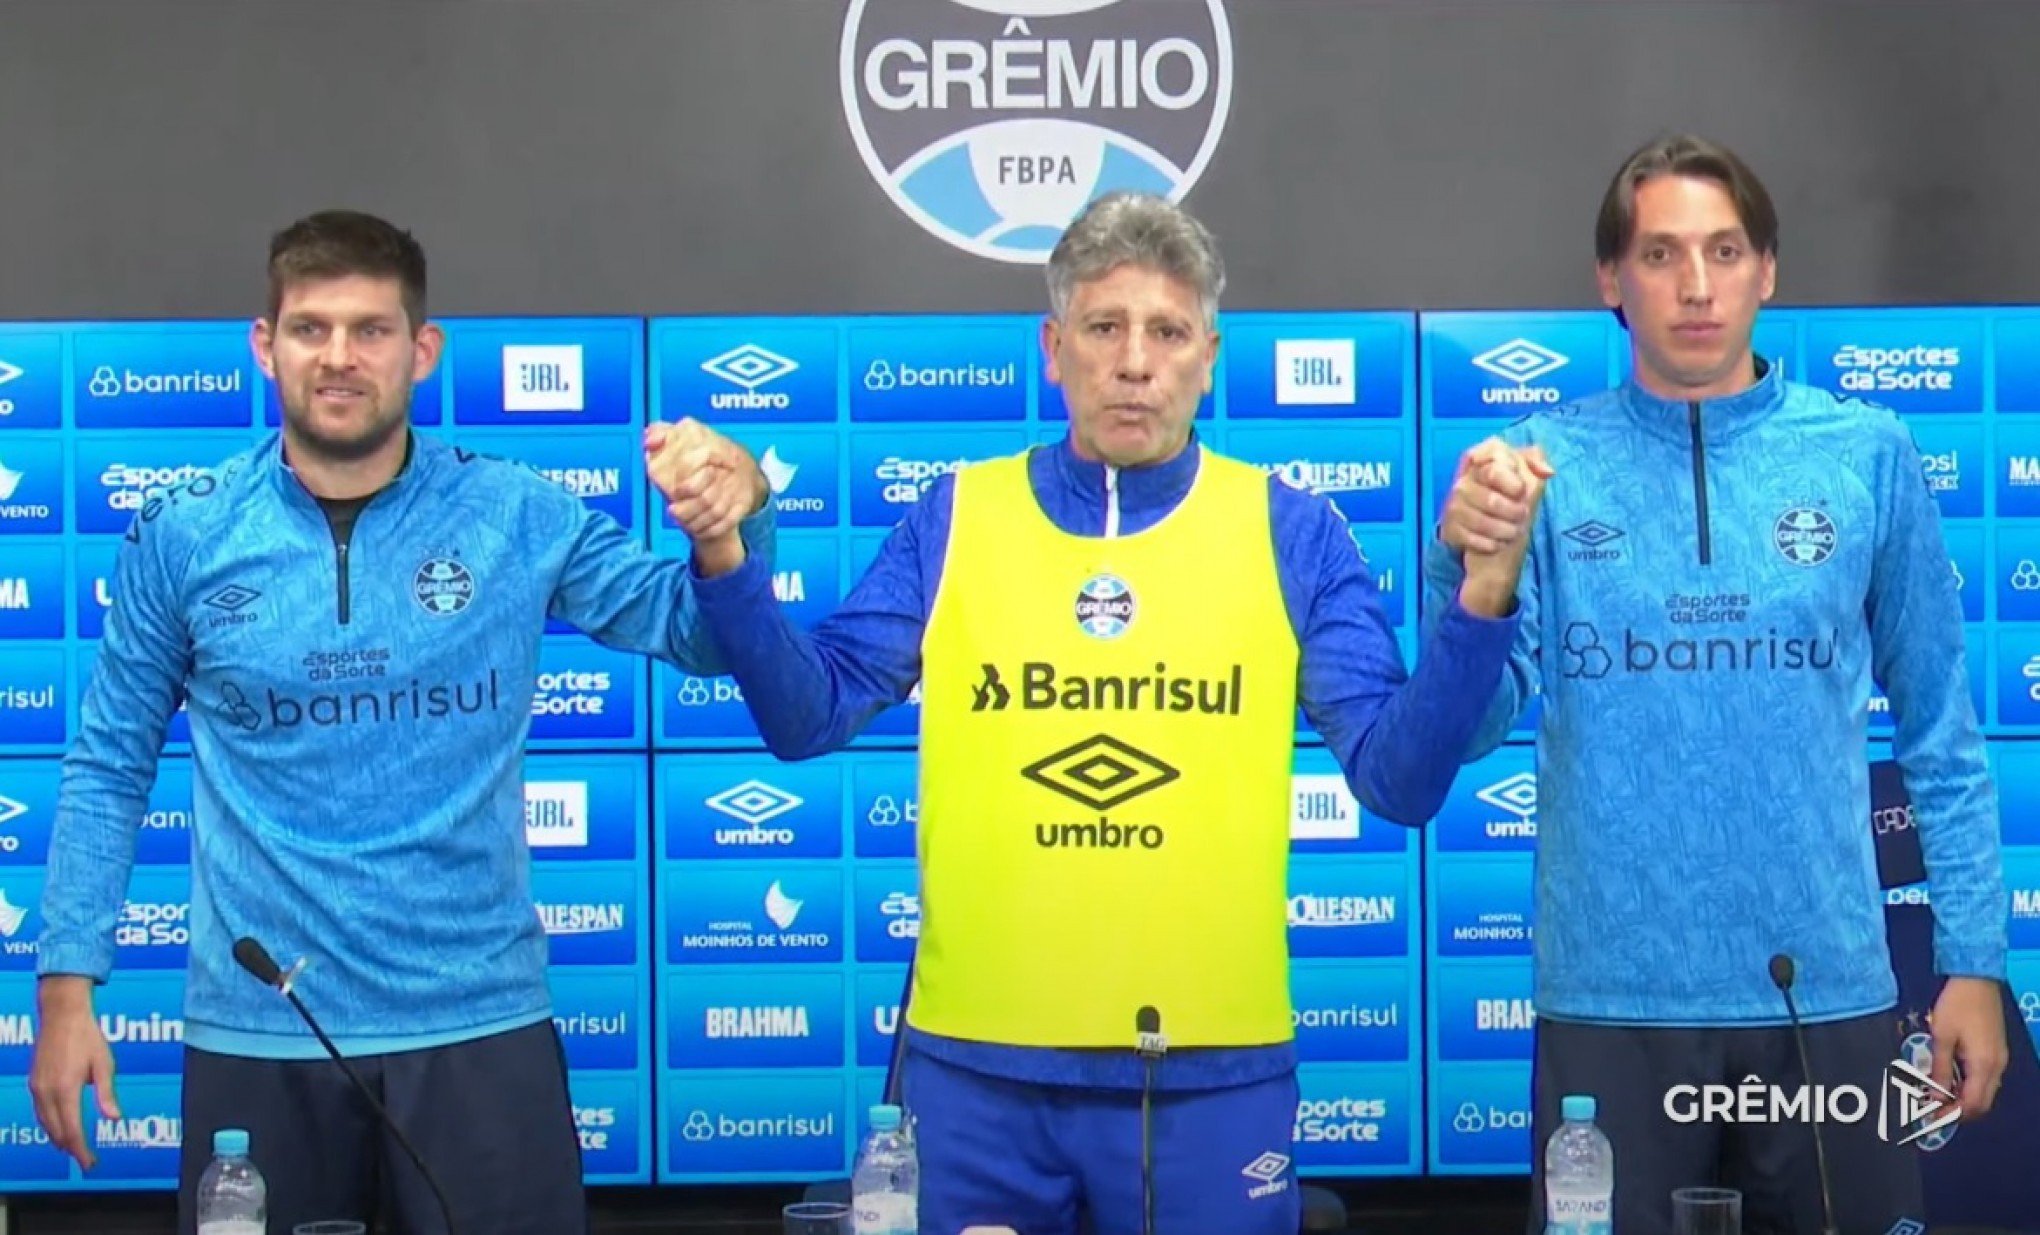 Líderes do Grêmio mostram união e pedem apoio: "Vamos sair dessa situação com a ajuda da torcida"